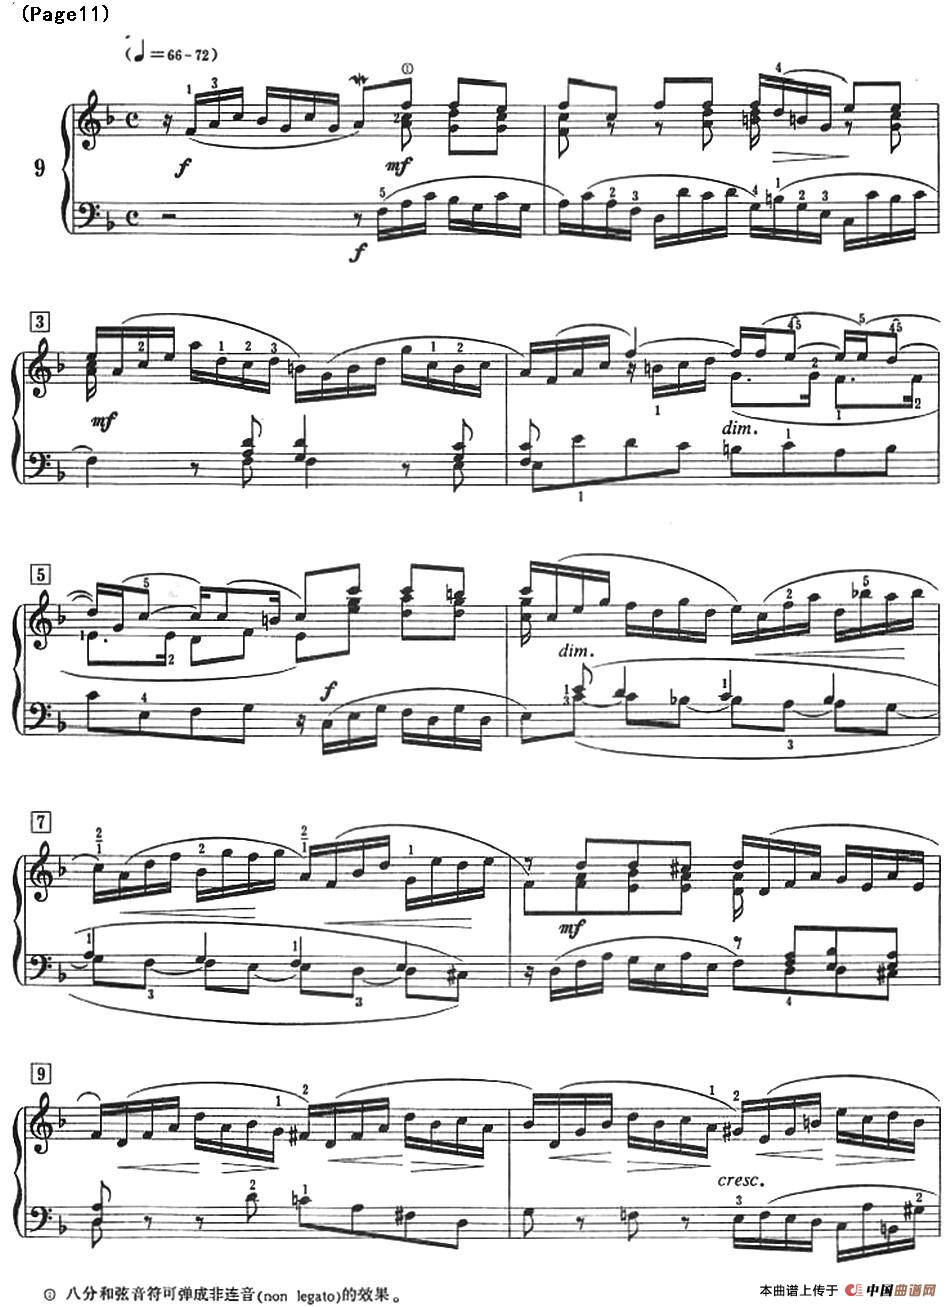 巴赫小前奏曲（NO.9-NO.12）(1)_Bach Little Prelude and Fugue_页面_16.jpg